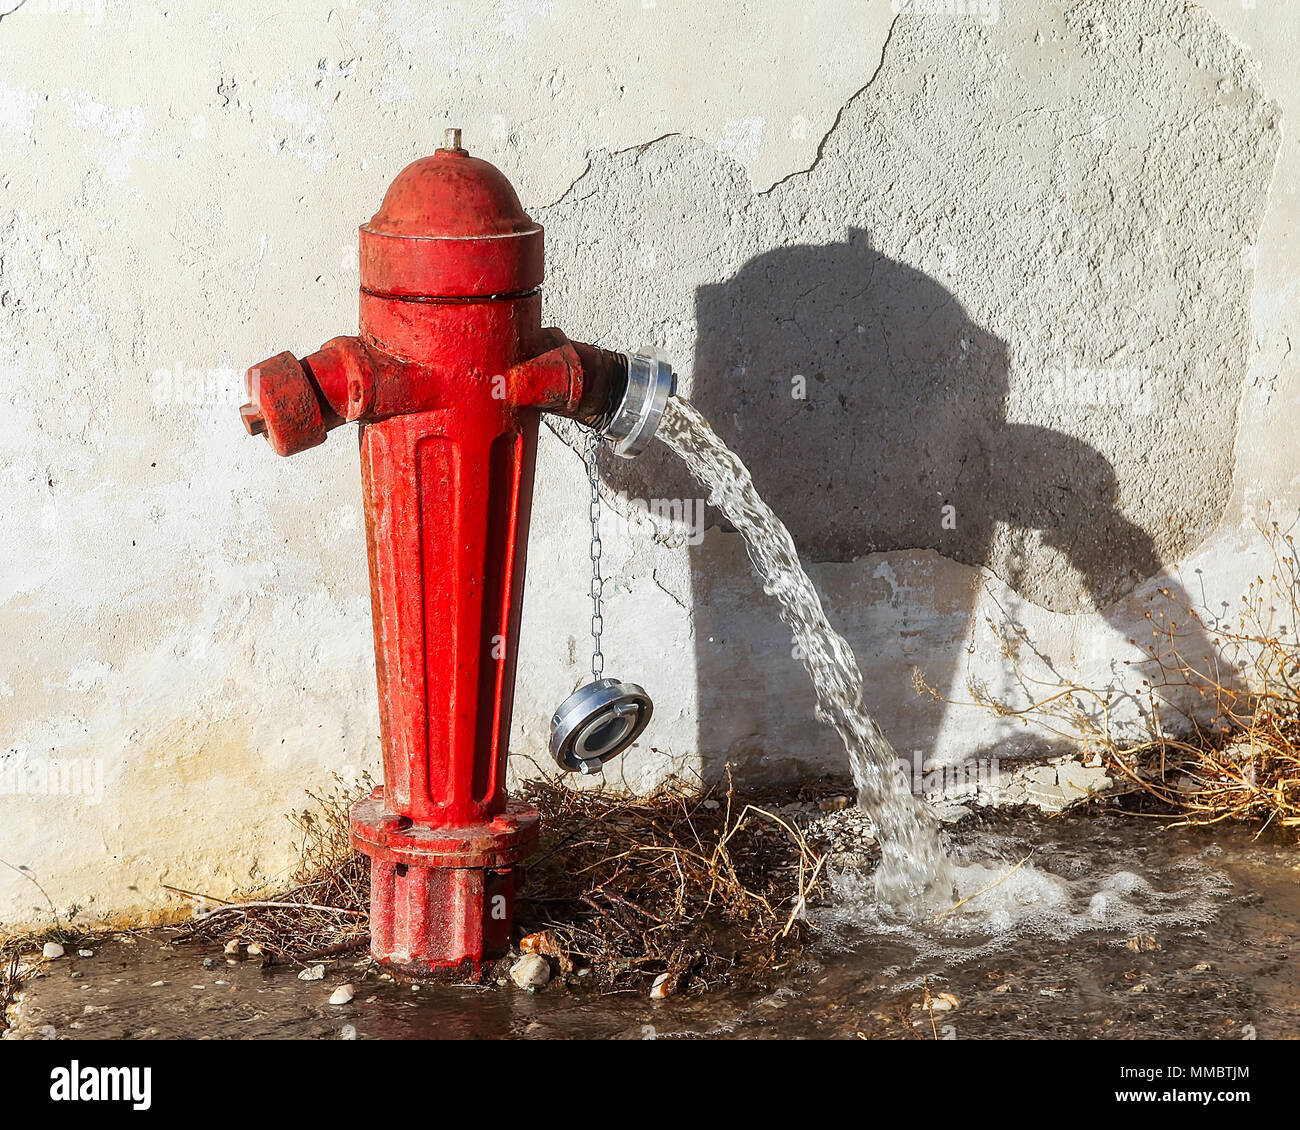 Hidrante exterior en una calle lateral con válvula abierta. Imágenes de  stock Fotografía de stock - Alamy